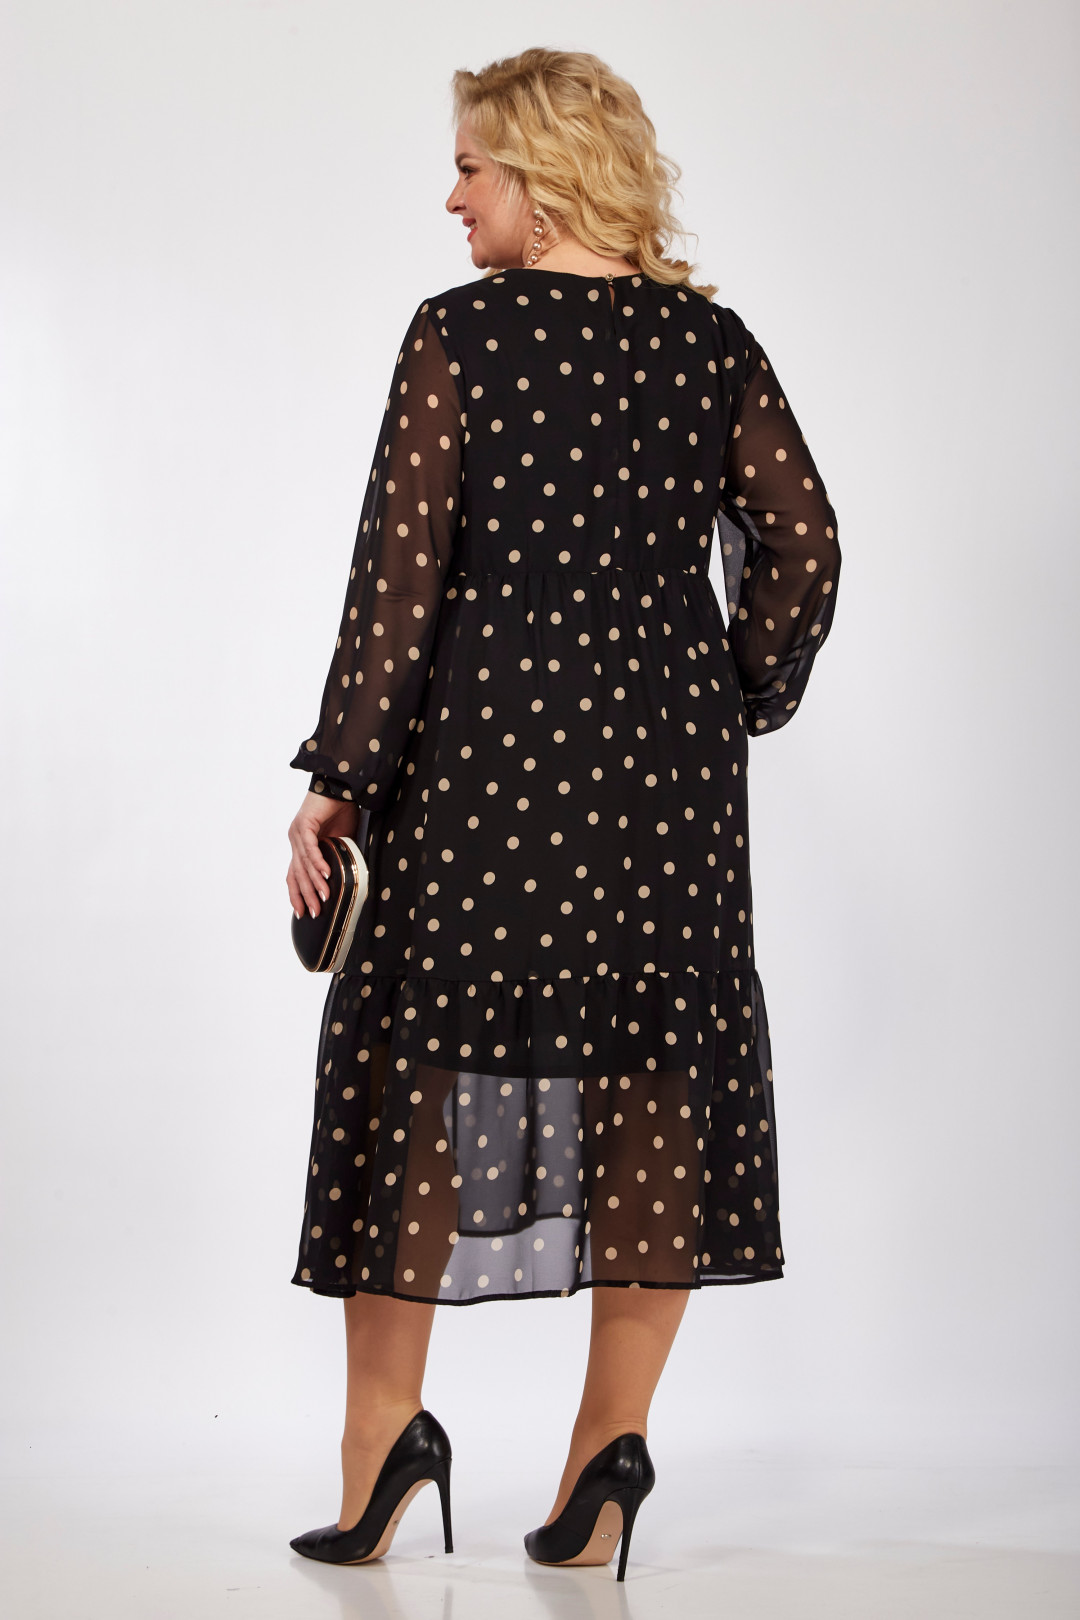 Платье Мишель Шик 2117 черный, бежевый горох